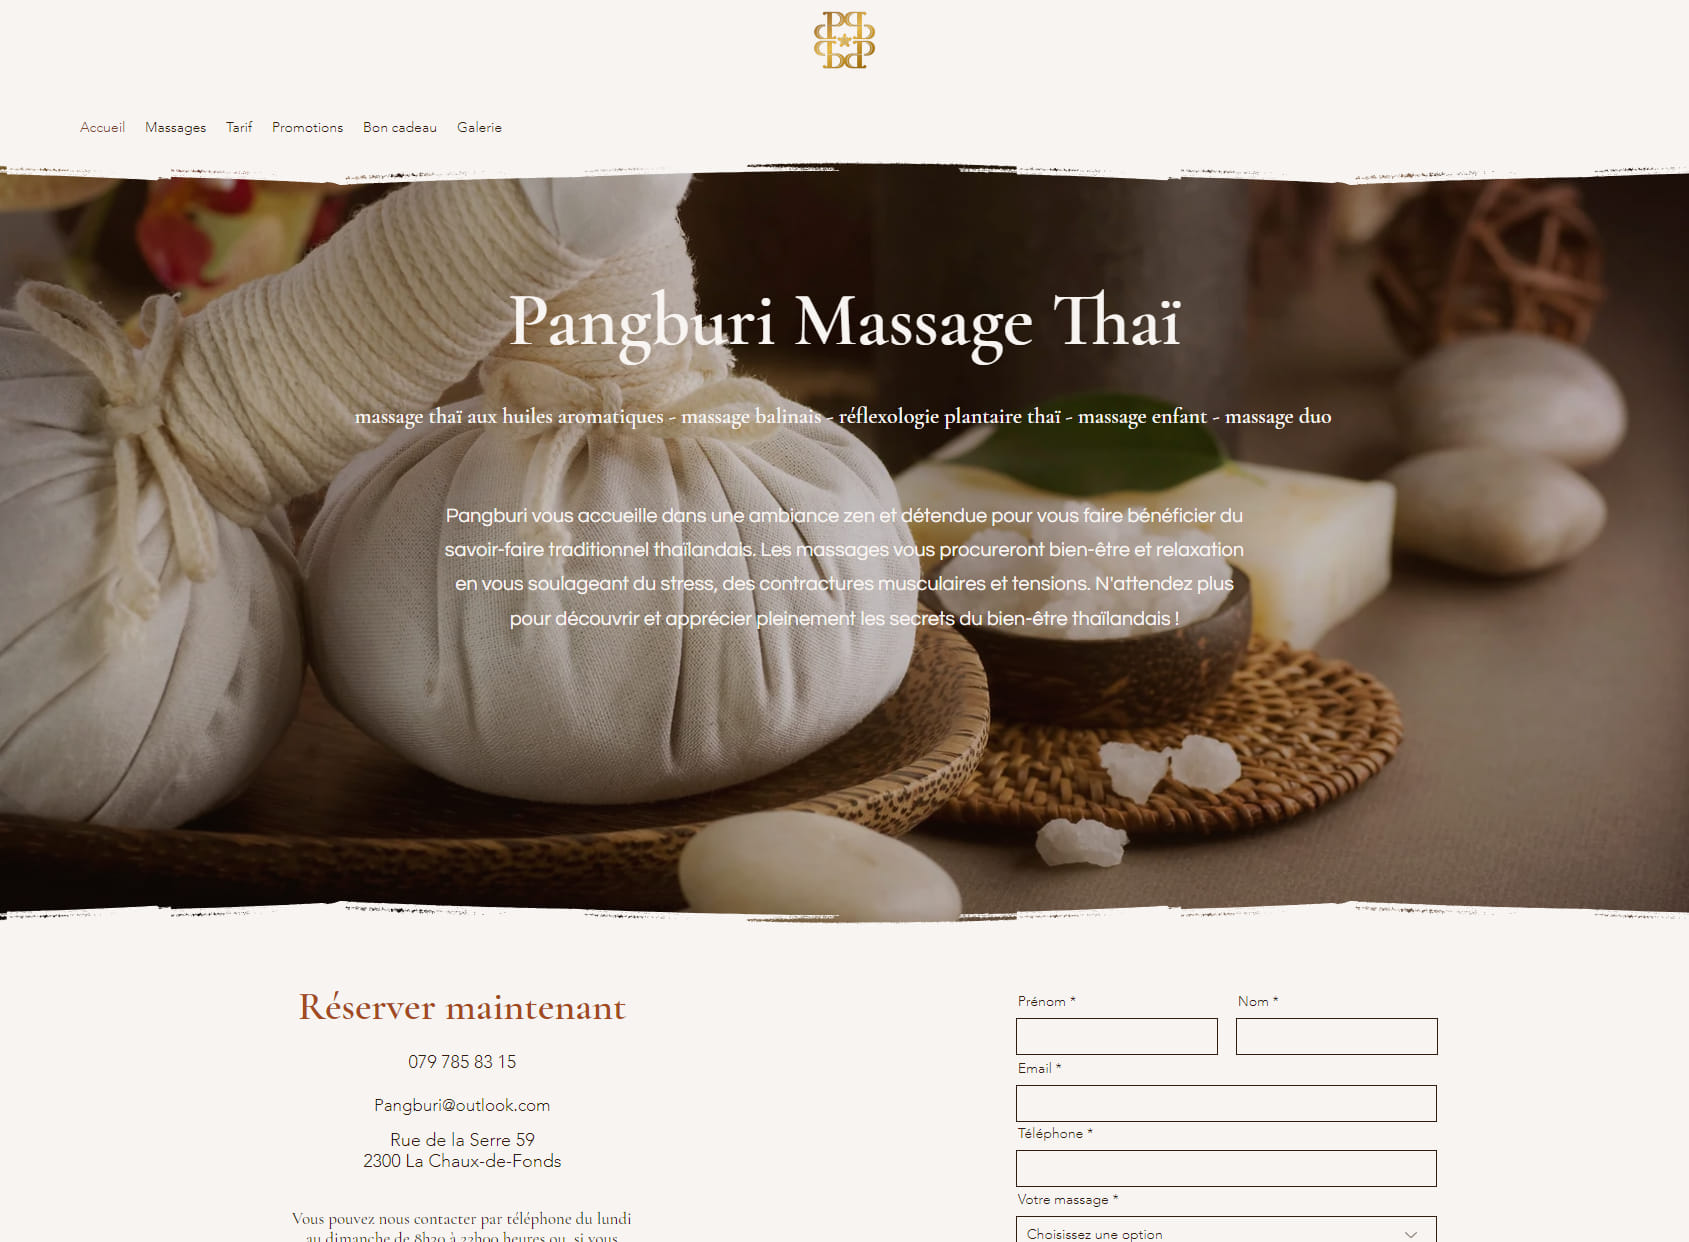 Pangburi Massage Thaï